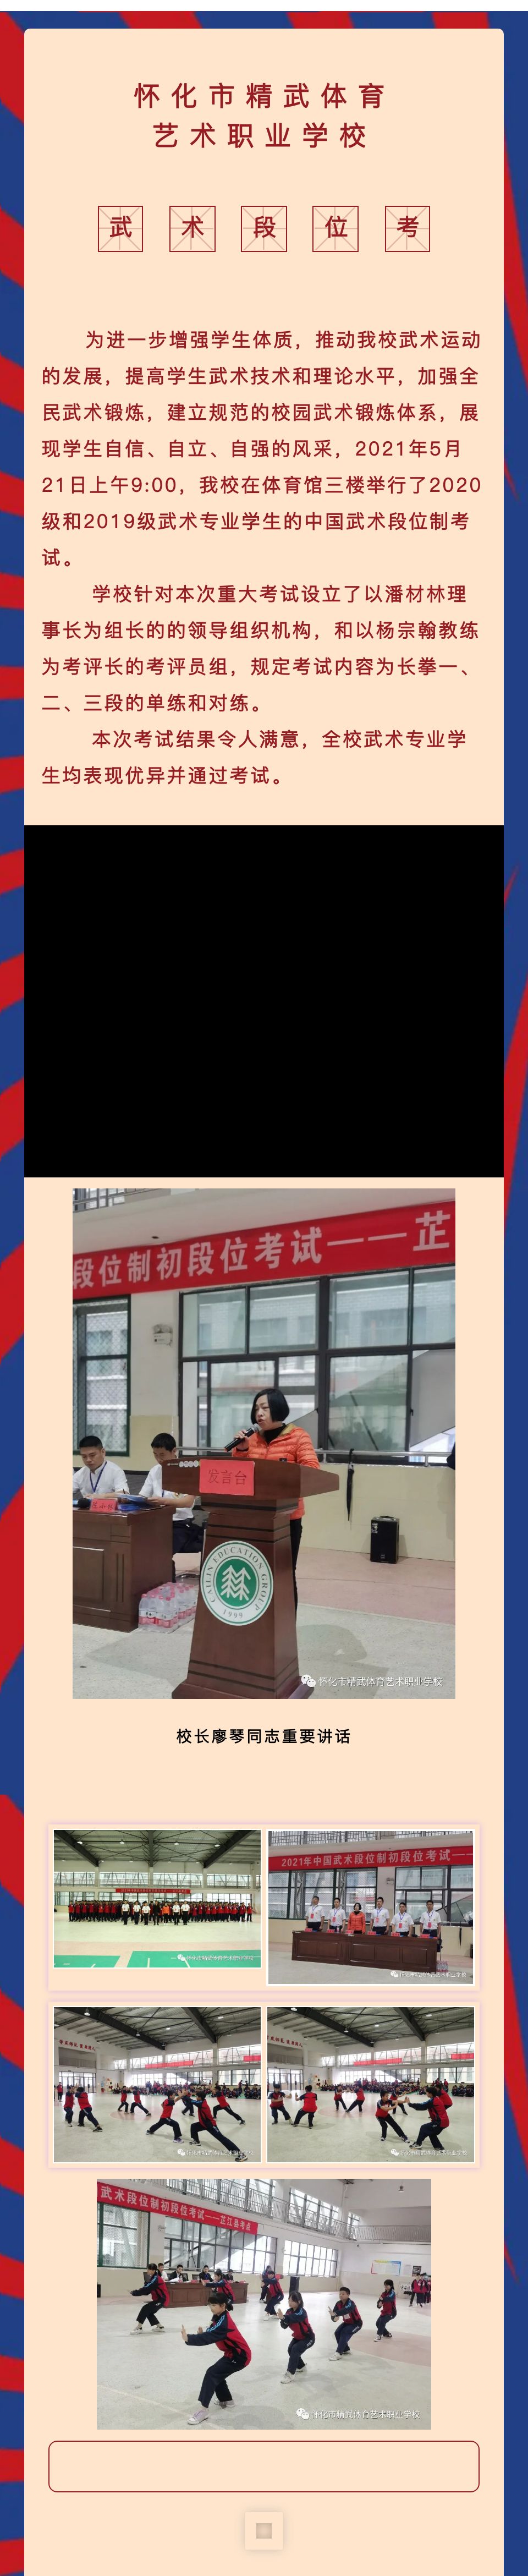 怀化市精武体育艺术职业学校举行2021年中国武术段位制考试